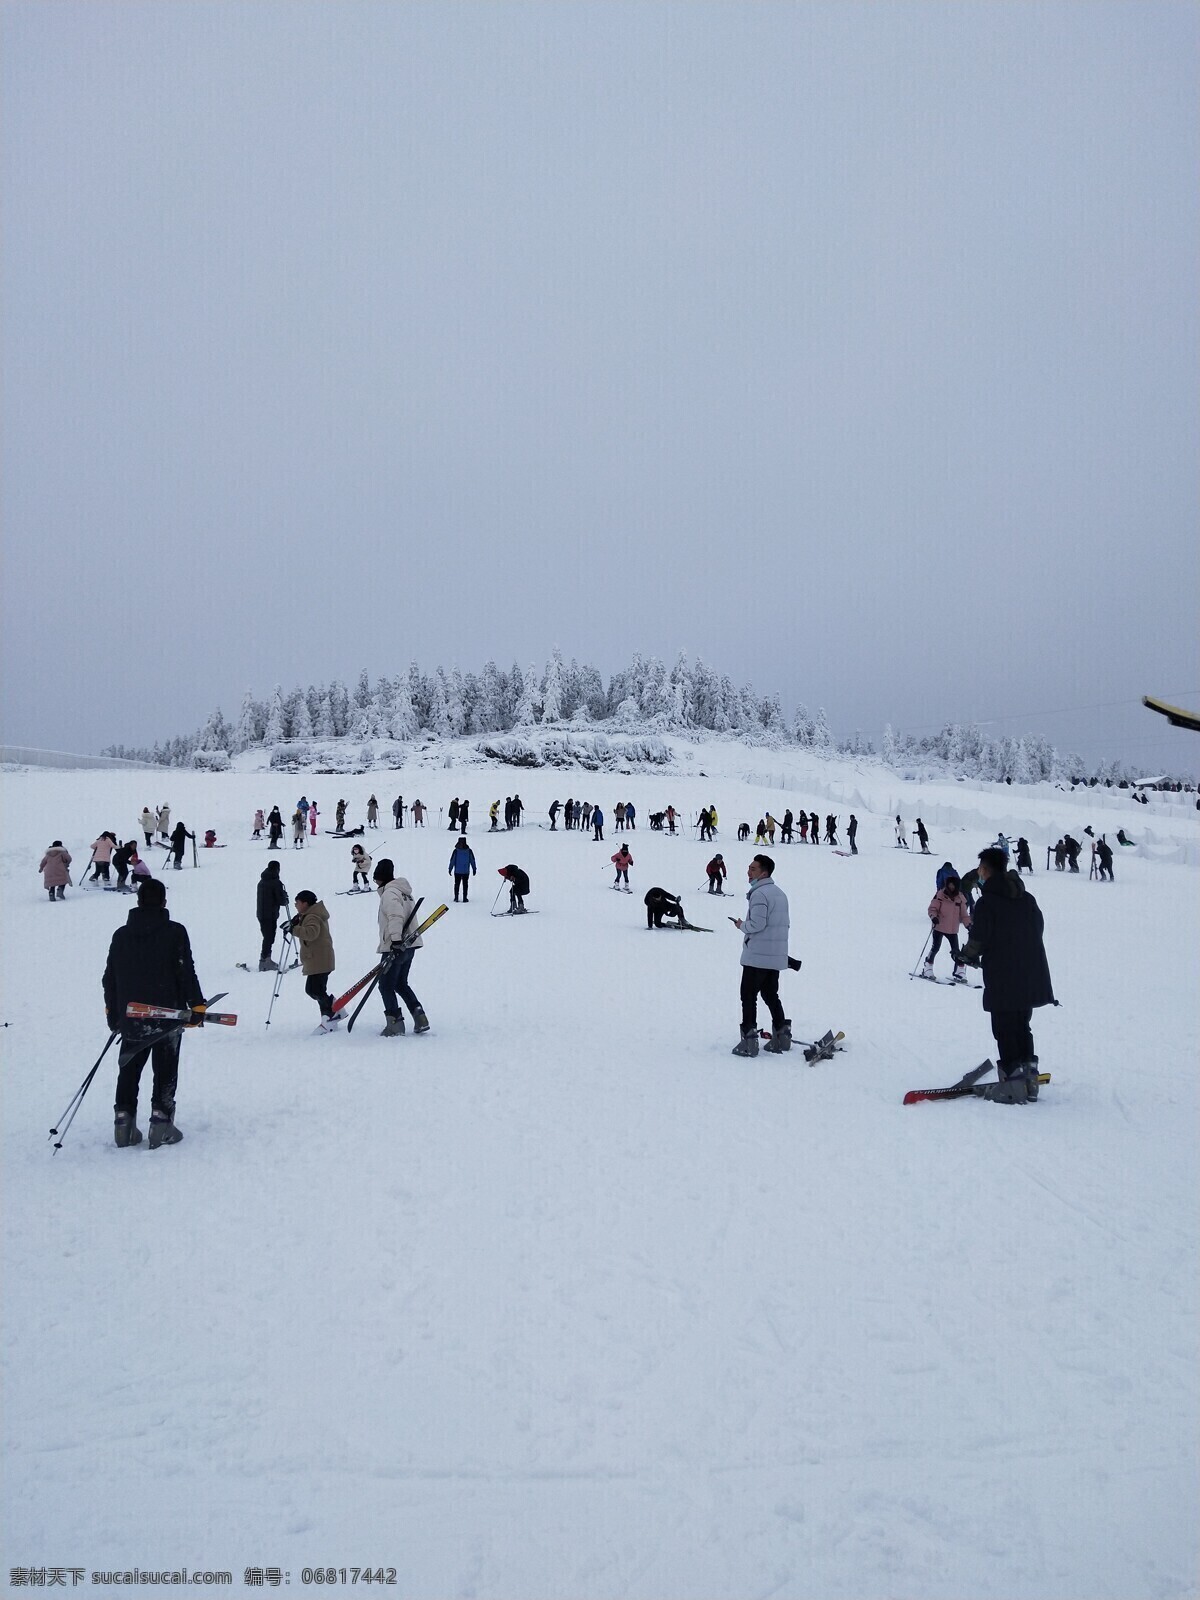 滑雪板 滑雪场 山坡 雪地 运动 滑雪运动 单板滑雪 旅游摄影 国内旅游